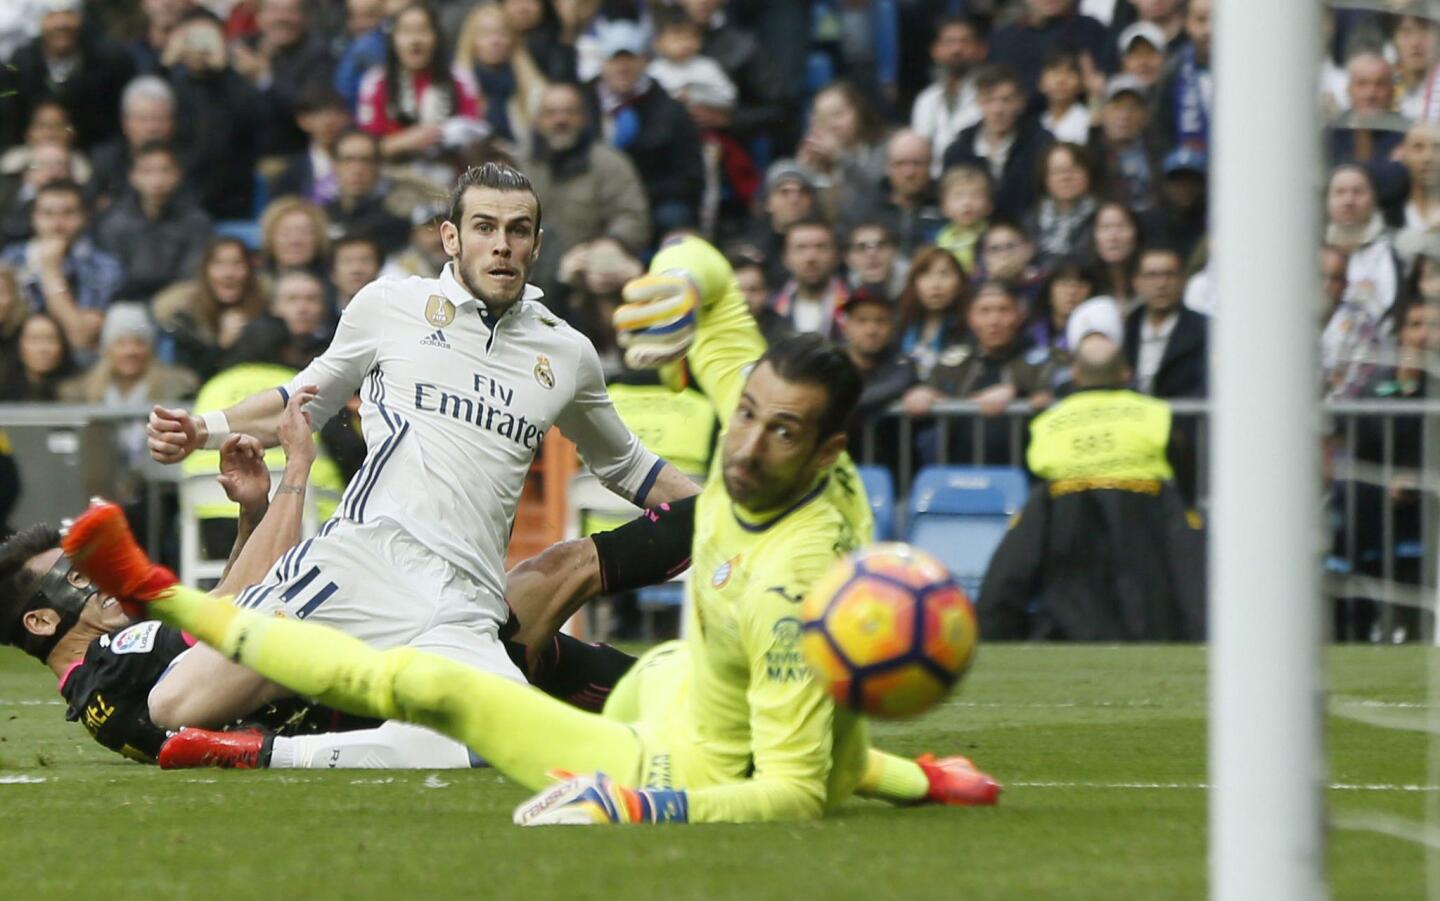 El atacante de Real Madrid Gareth Bale celebra tras anotar el segundo gol del equipo en un partido el sábado contra Espanyol en la Liga española. Madrid ganó 2-0. (AP Foto/Francisco Seco) ** Usable by HOY, ELSENT and SD Only **